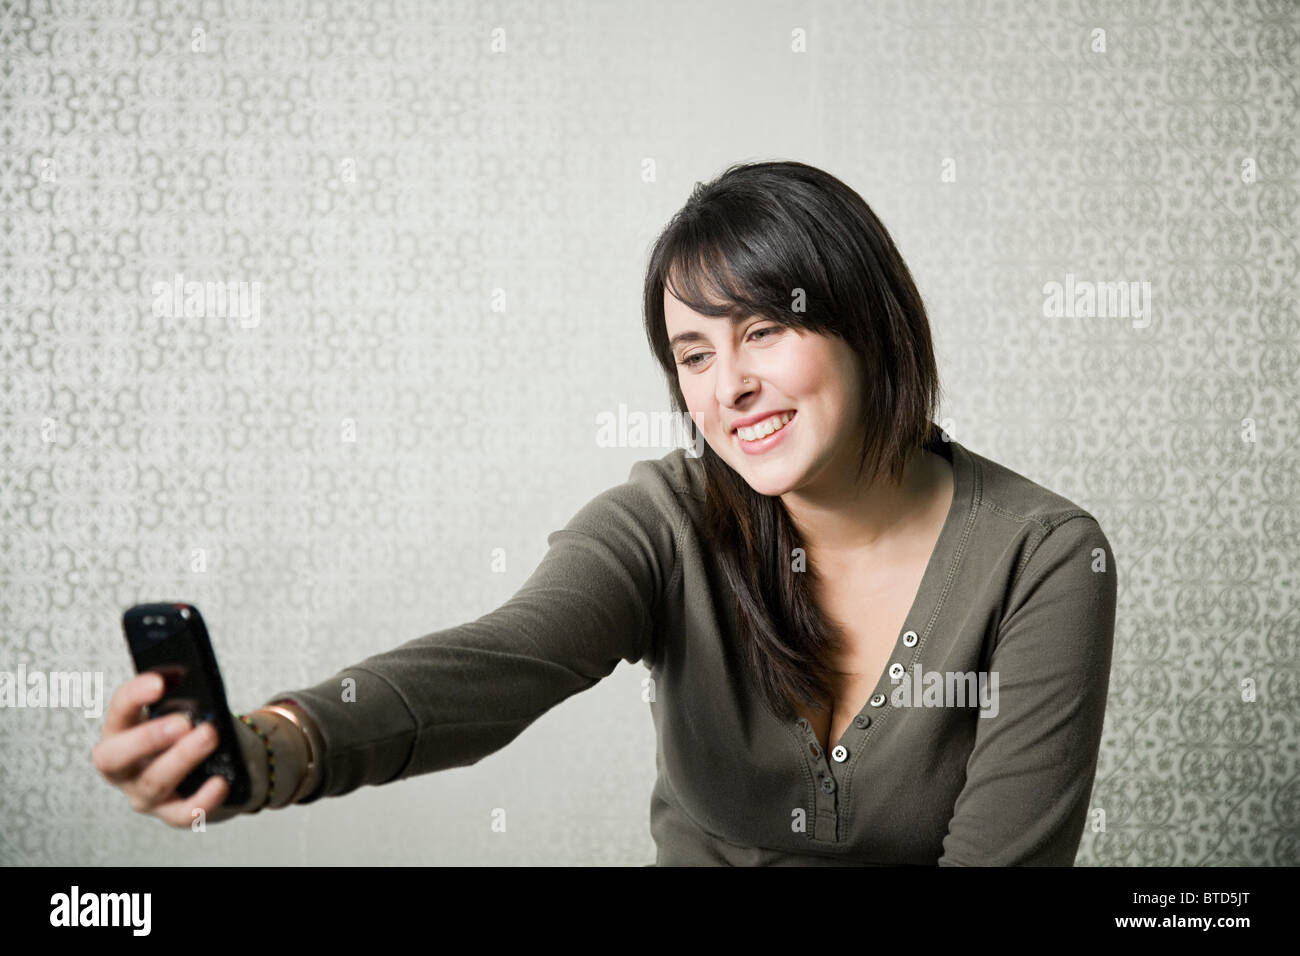 Adolescente fotografiando a ella misma con el smartphone Foto de stock